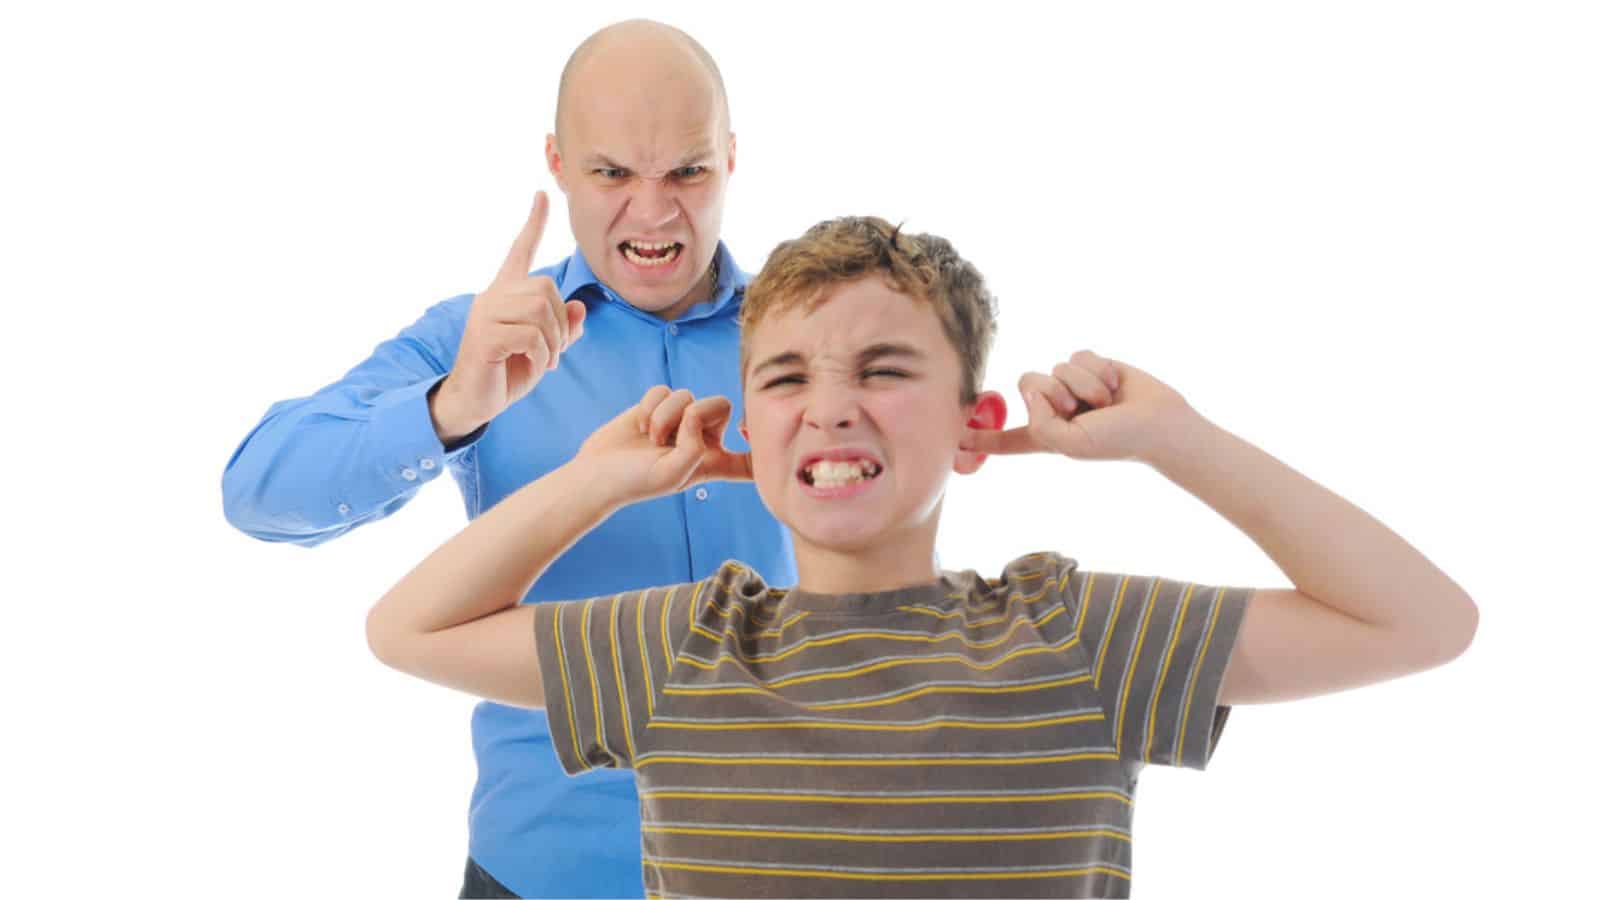 14 cách để giữ bình tĩnh khi tất cả những gì bạn muốn làm là hét vào mặt con mình